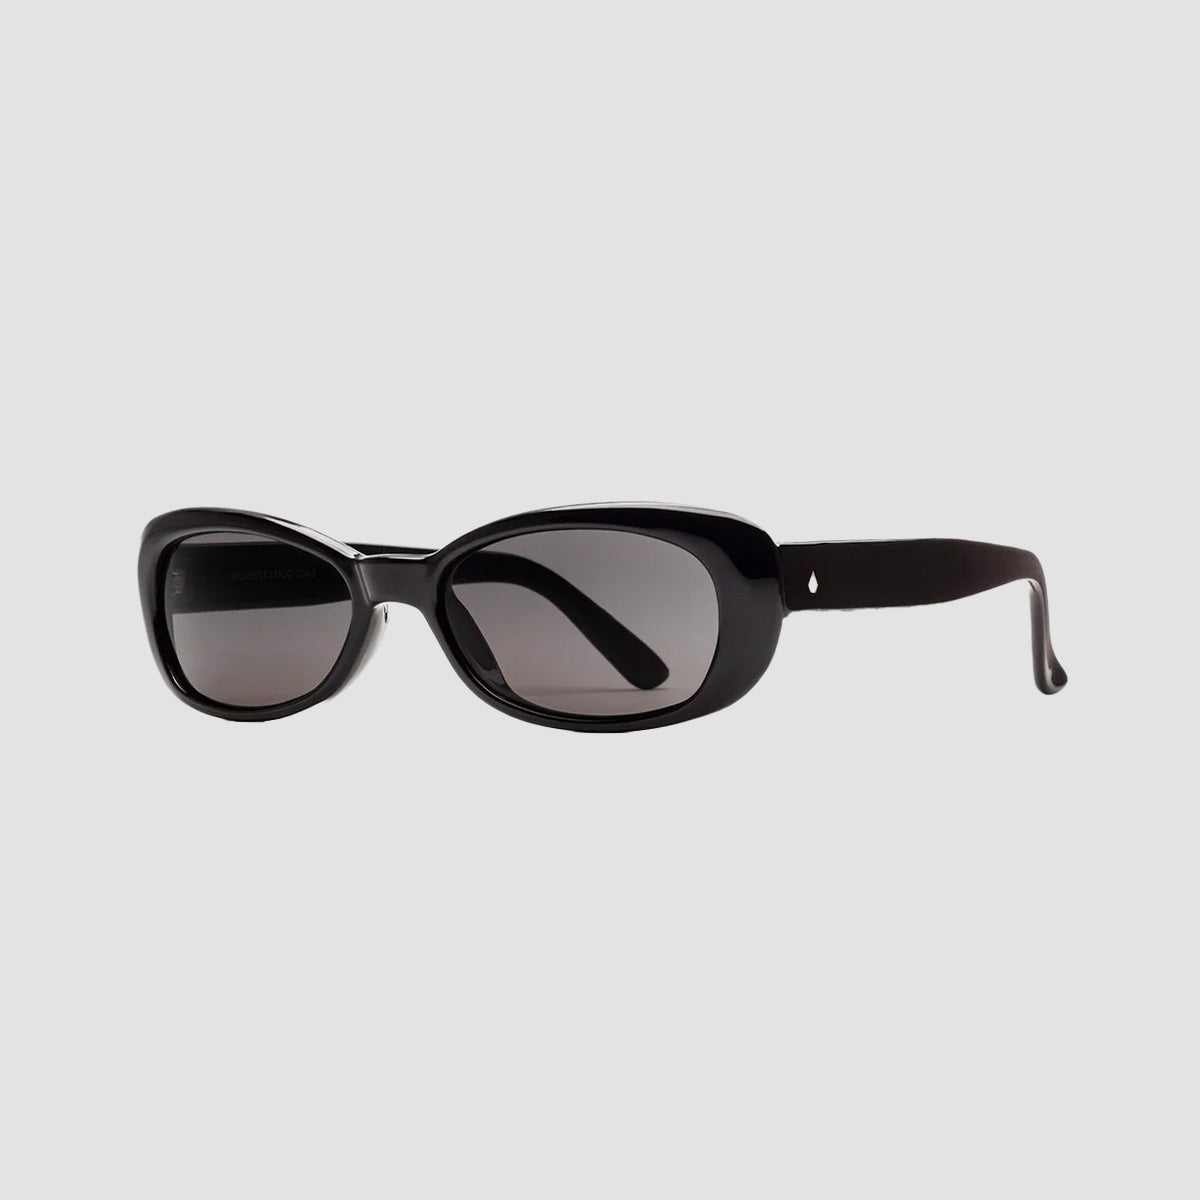 Volcom Jam Sunglasses Gloss Black/Grey - Womens